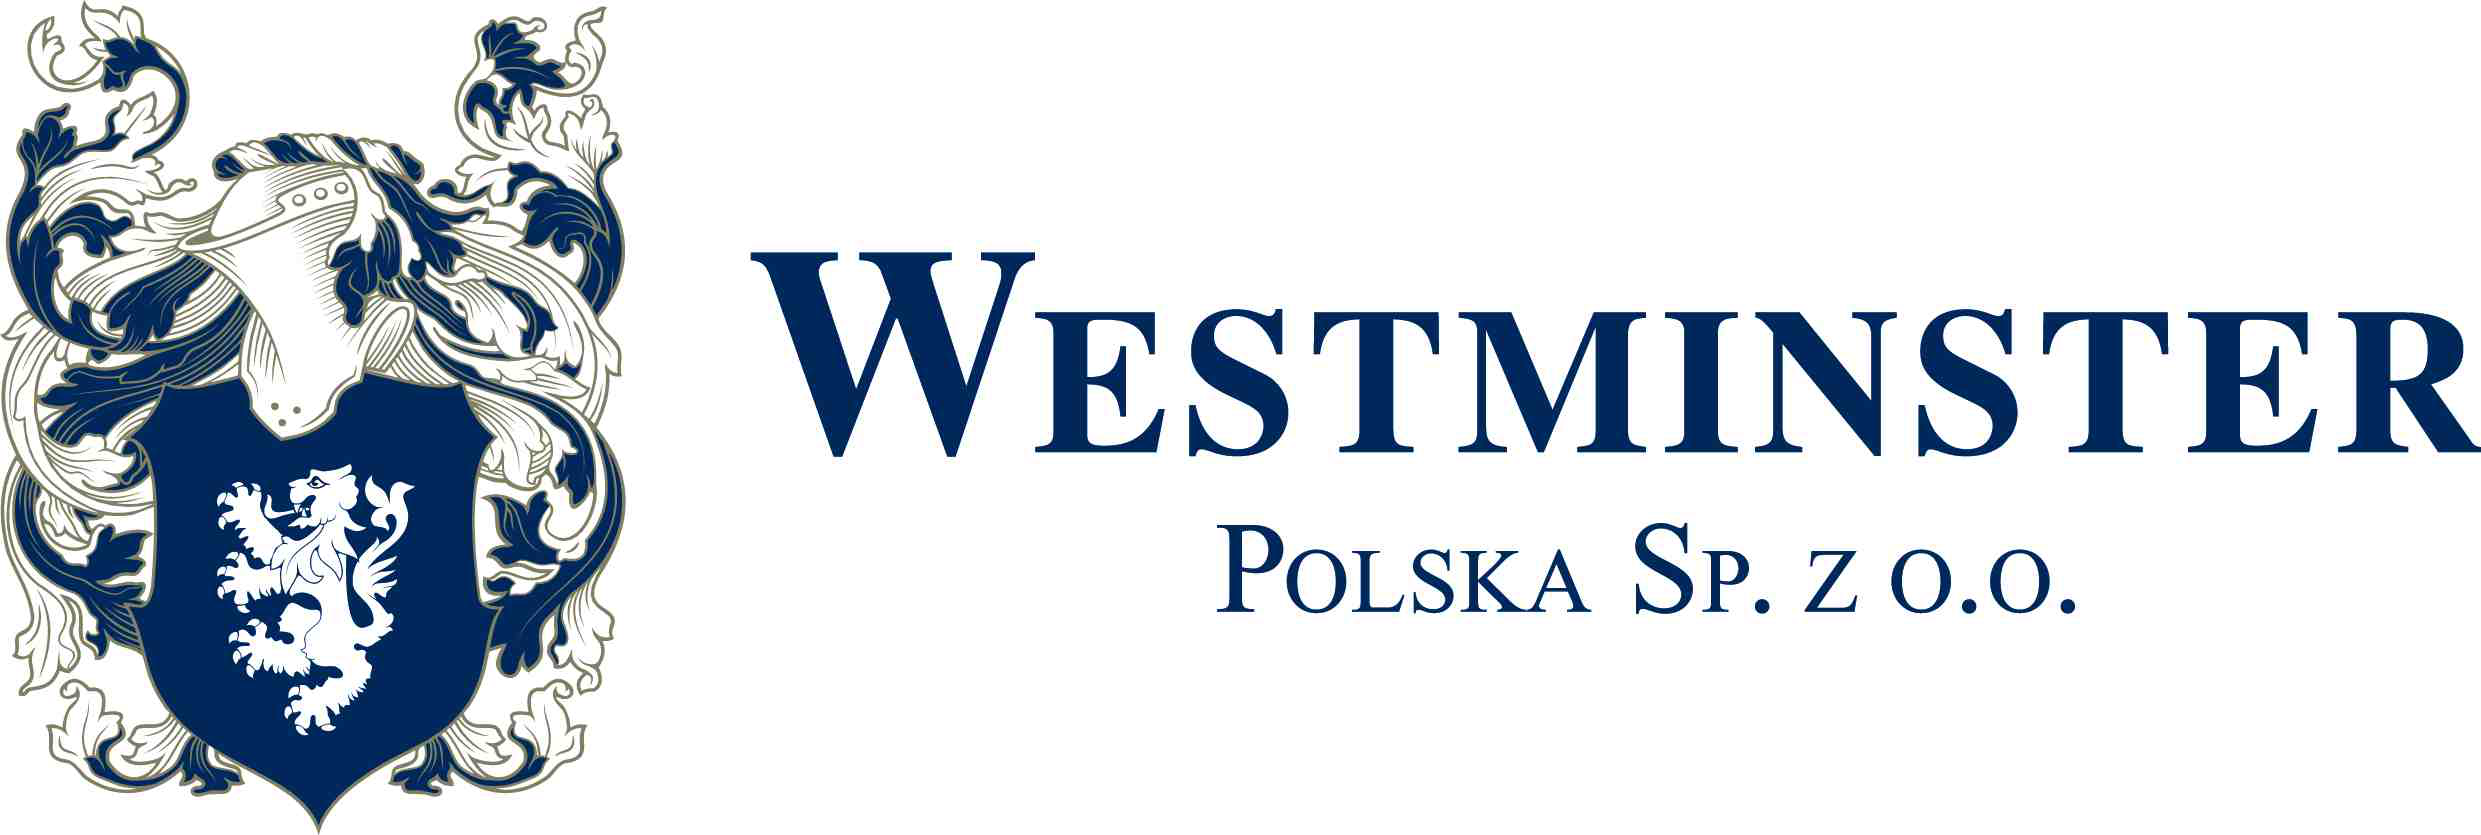 Westminster Polska